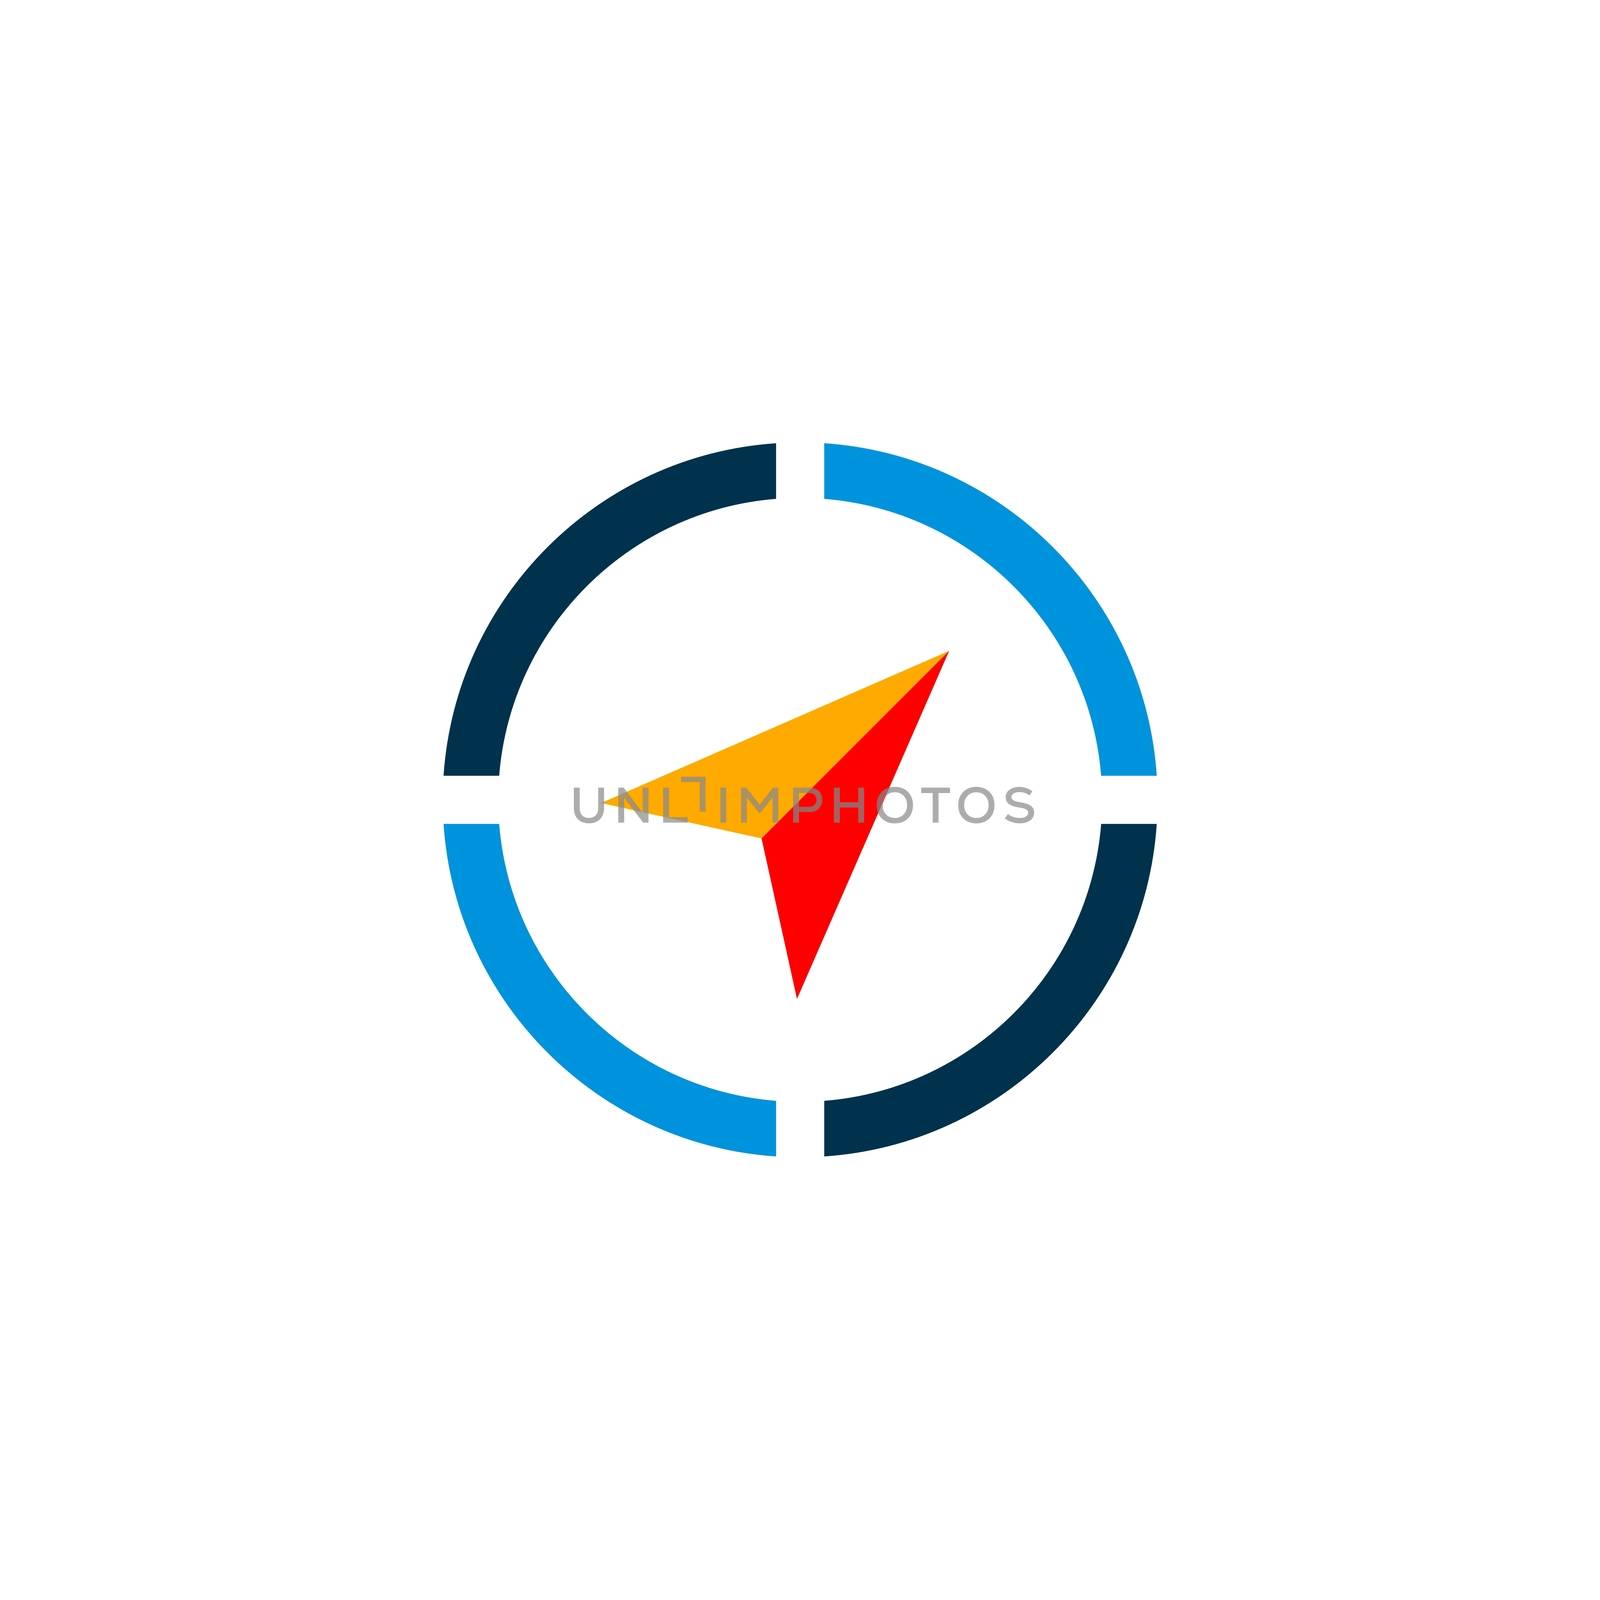 Compass Arrow vector Logo Template Illustration Design. Vector EPS 10.